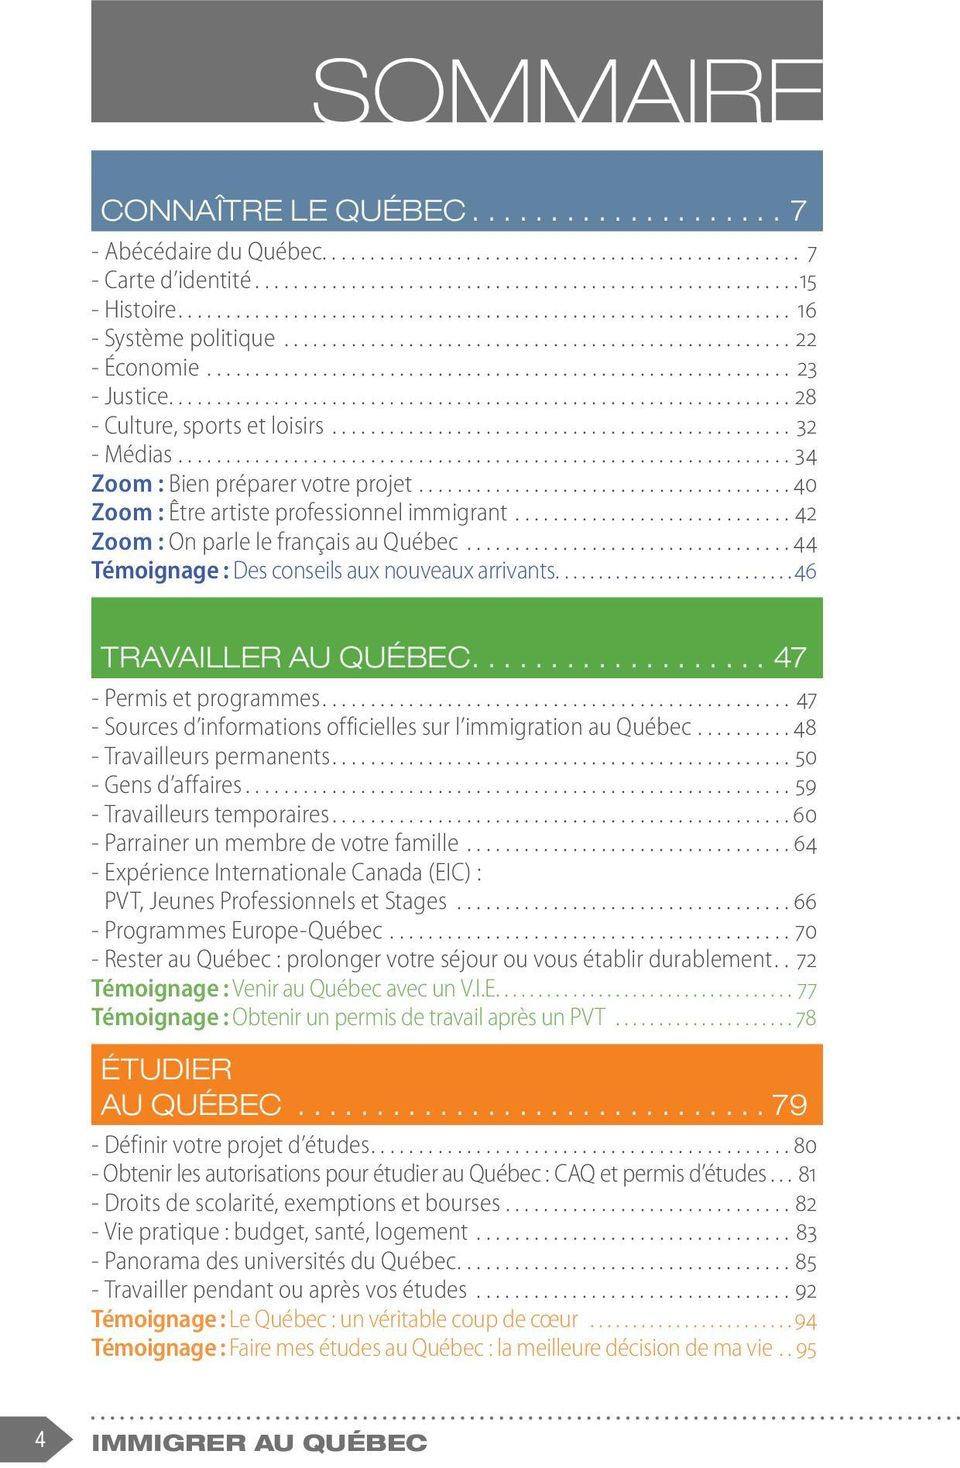 ..44 Témoignage : Des conseils aux nouveaux arrivants...46 TRAVAILLER AU QUÉBEC...47 - Permis et programmes...47 - Sources d informations officielles sur l immigration au Québec.